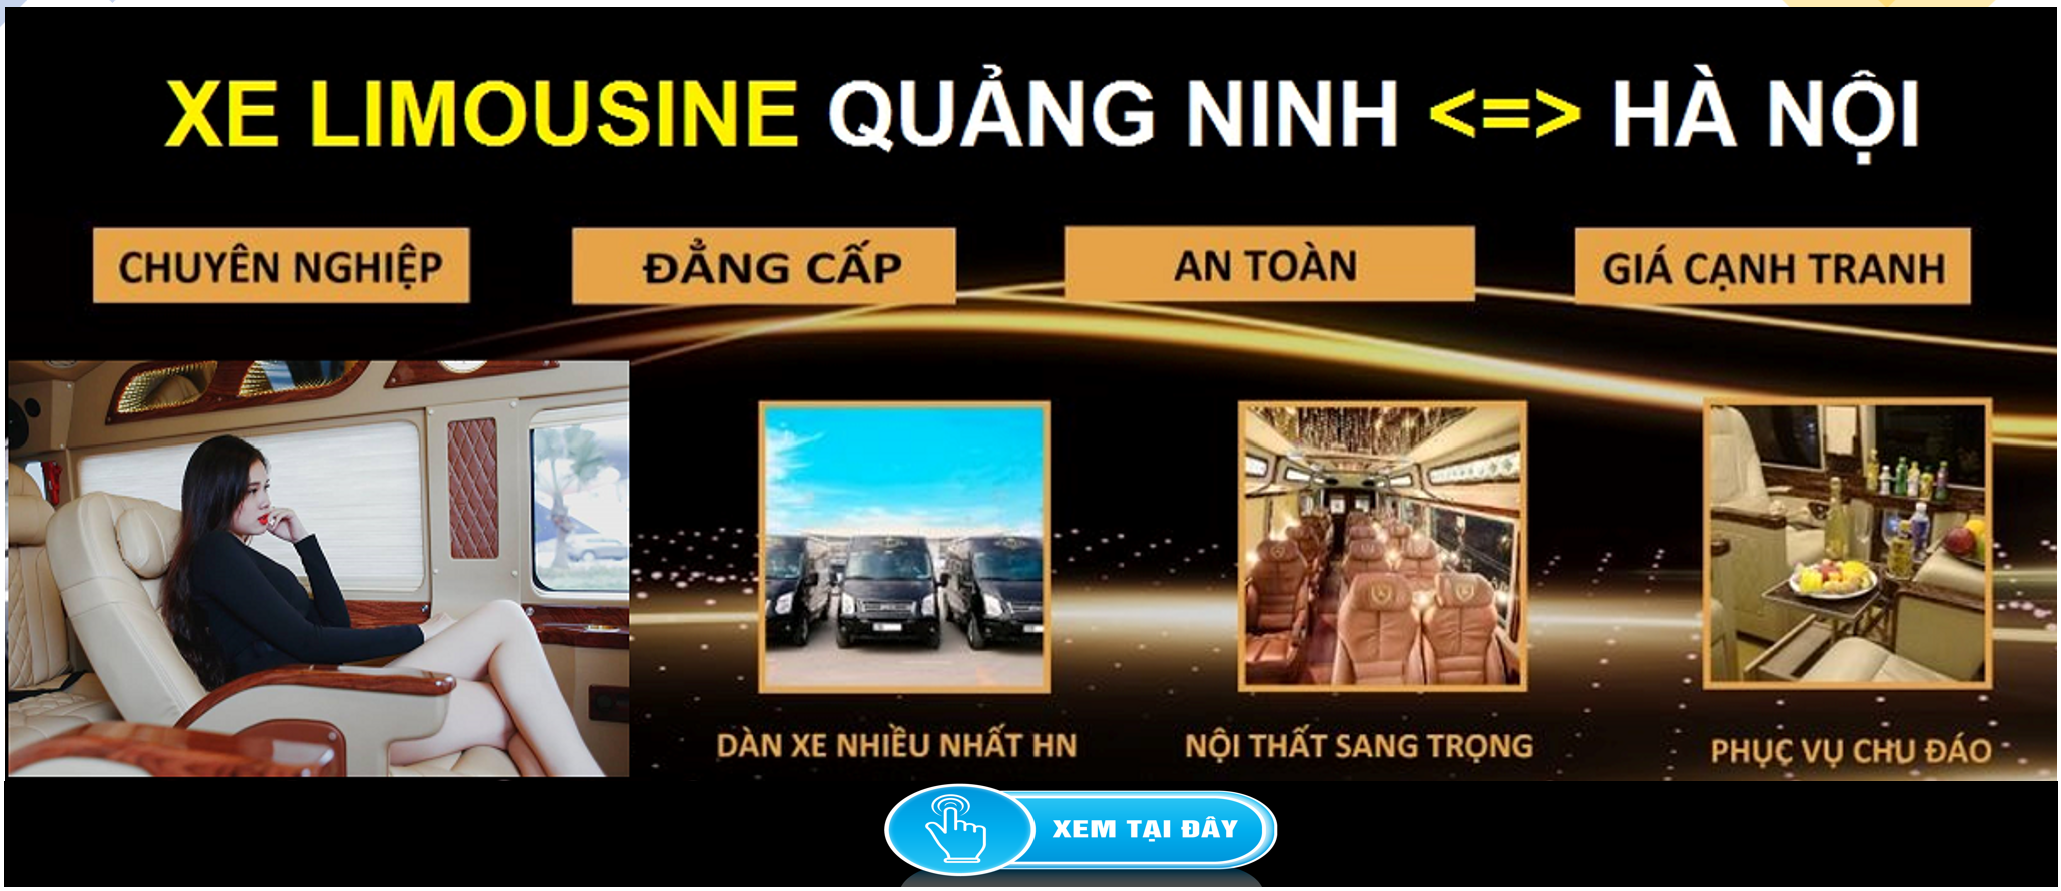 Xe Limousine Ha Noi Quang Ninh dua don tai nha 1d - Quy trình - Thủ tục mua xe ô tô cũ mới trả góp